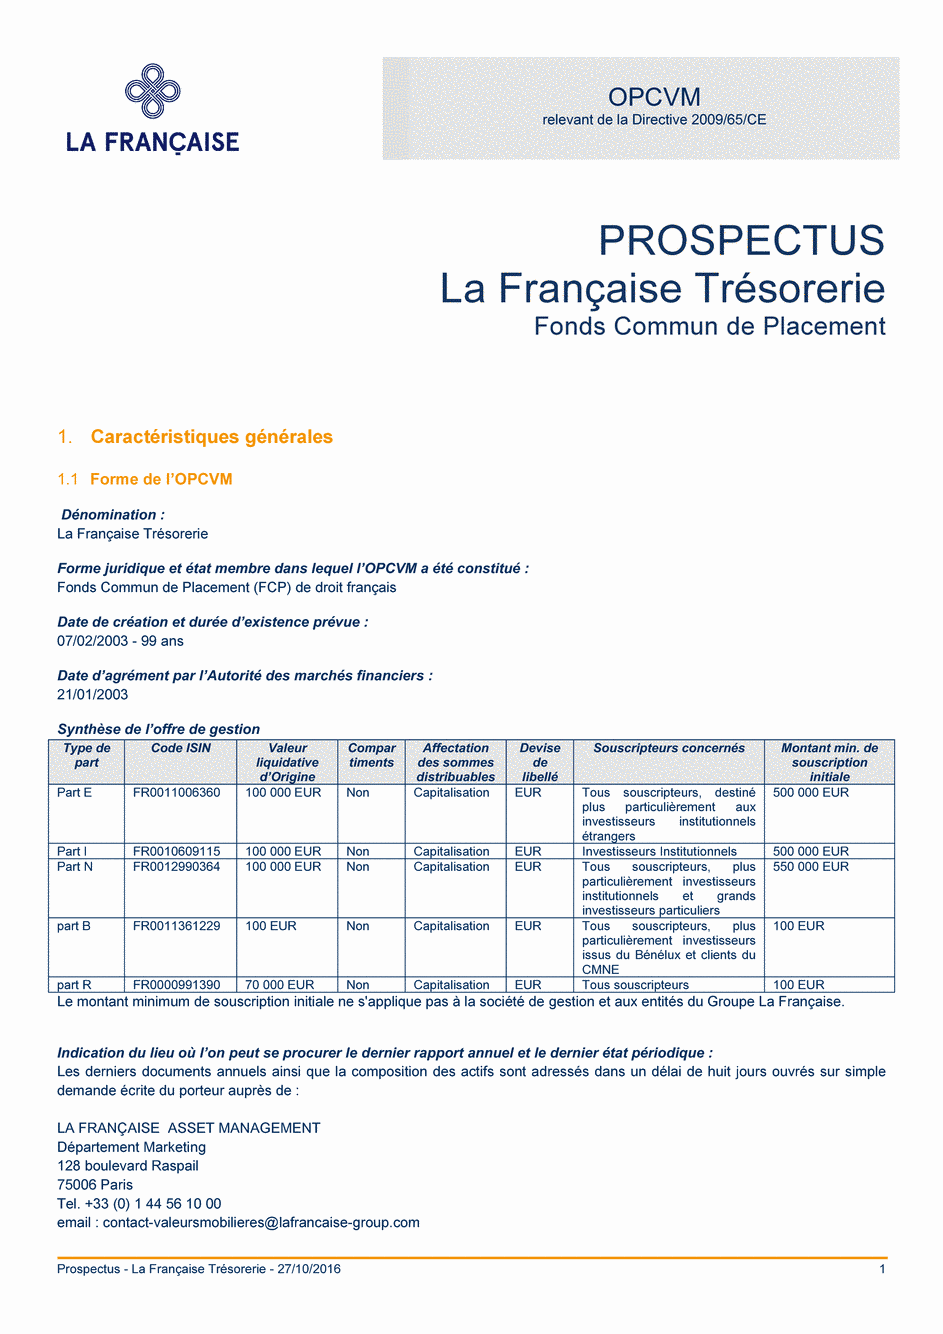 Prospectus La Française Trésorerie - Part E - 27/10/2016 - Français